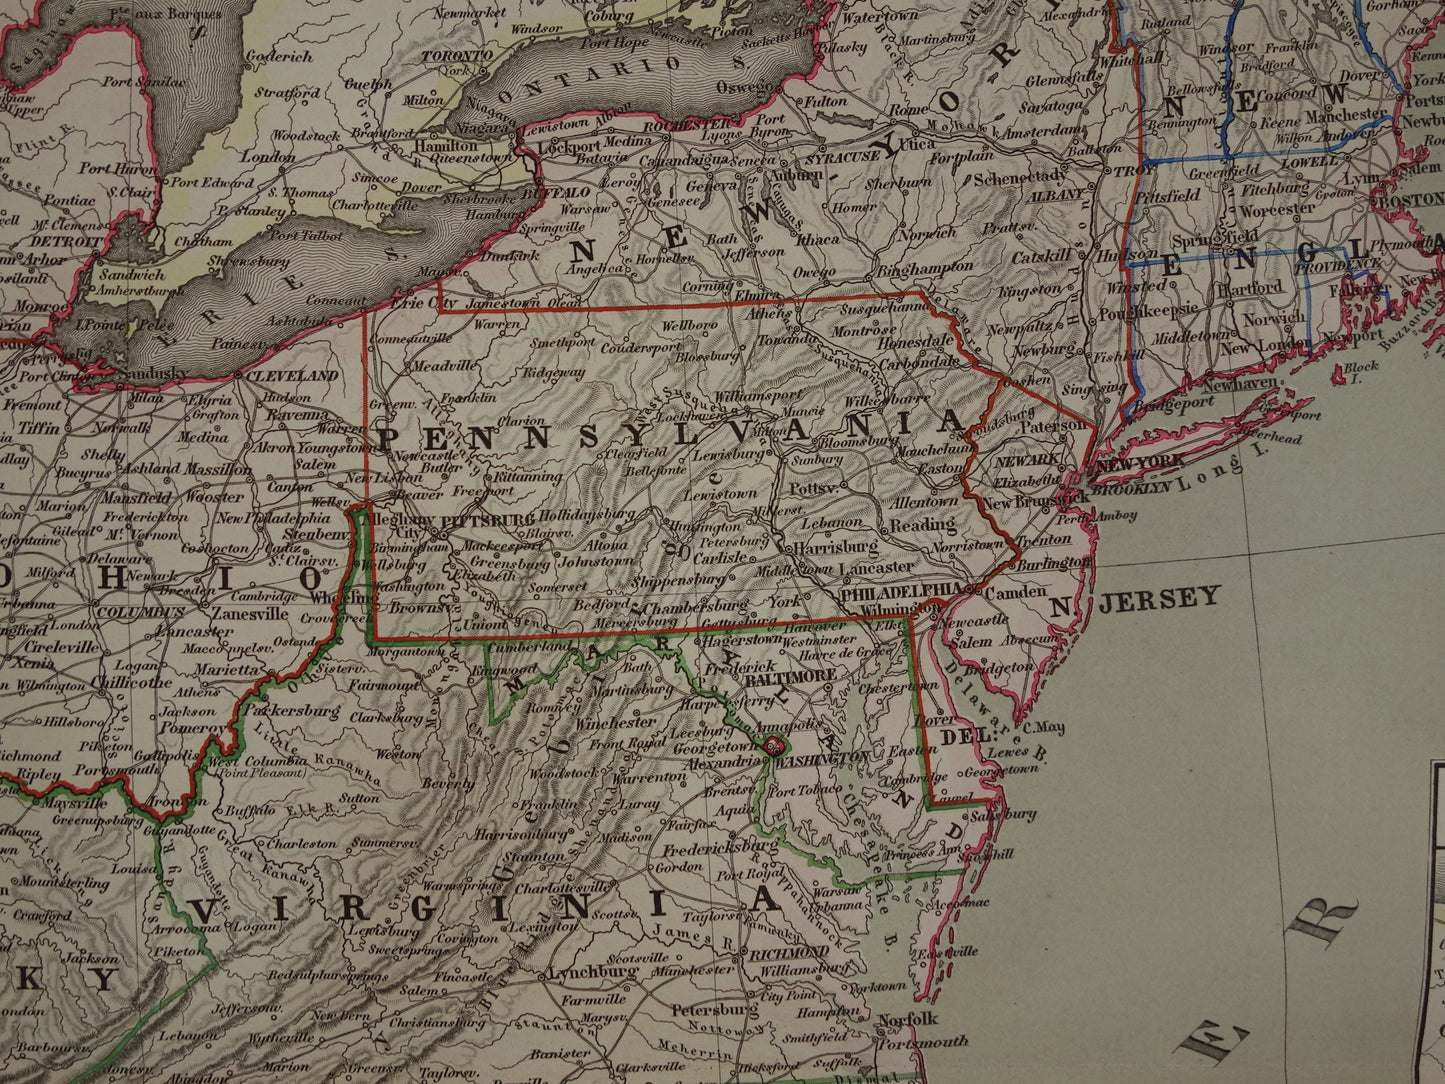 Verenigde Staten Oostkust oude kaart van VS in 1856 originele antieke landkaart Amerika vintage poster